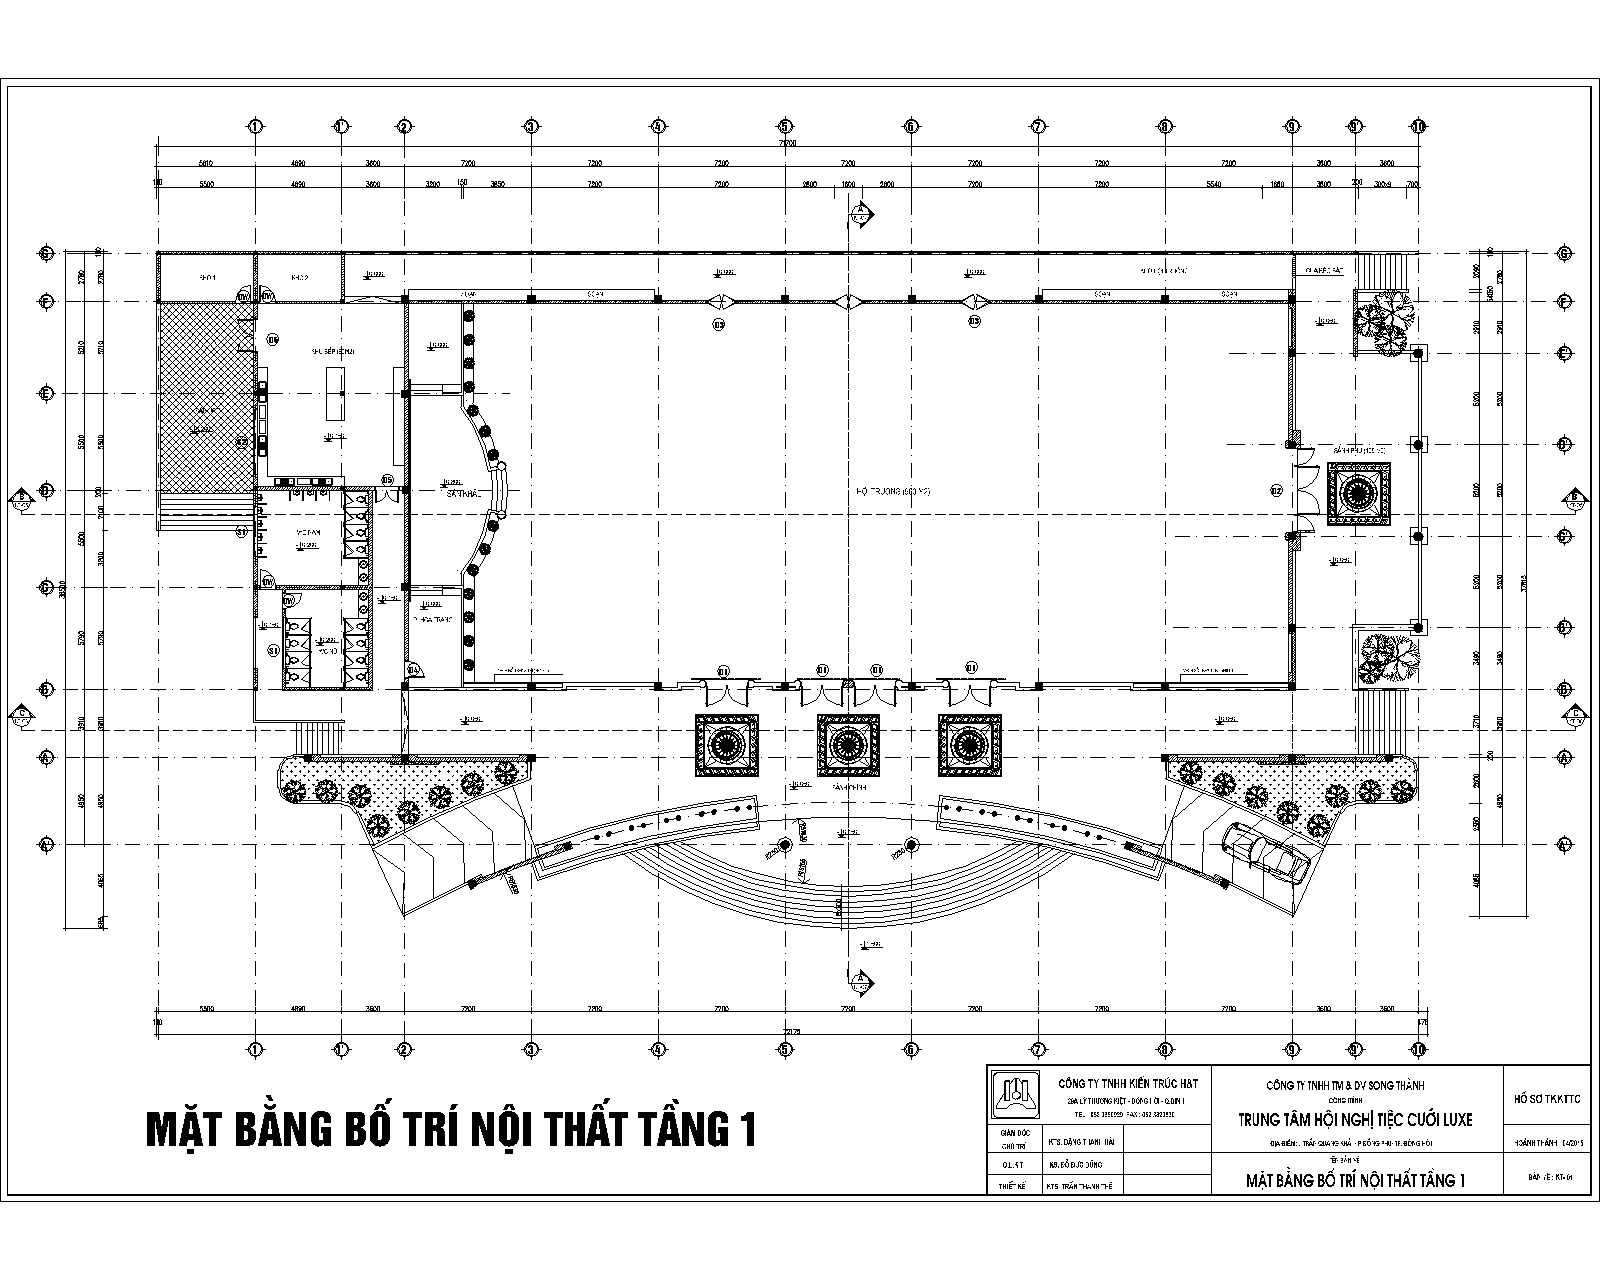 Hồ sơ thiết kế trung tâm nhà hàng tiệc cưới hội nghị 1000 m2